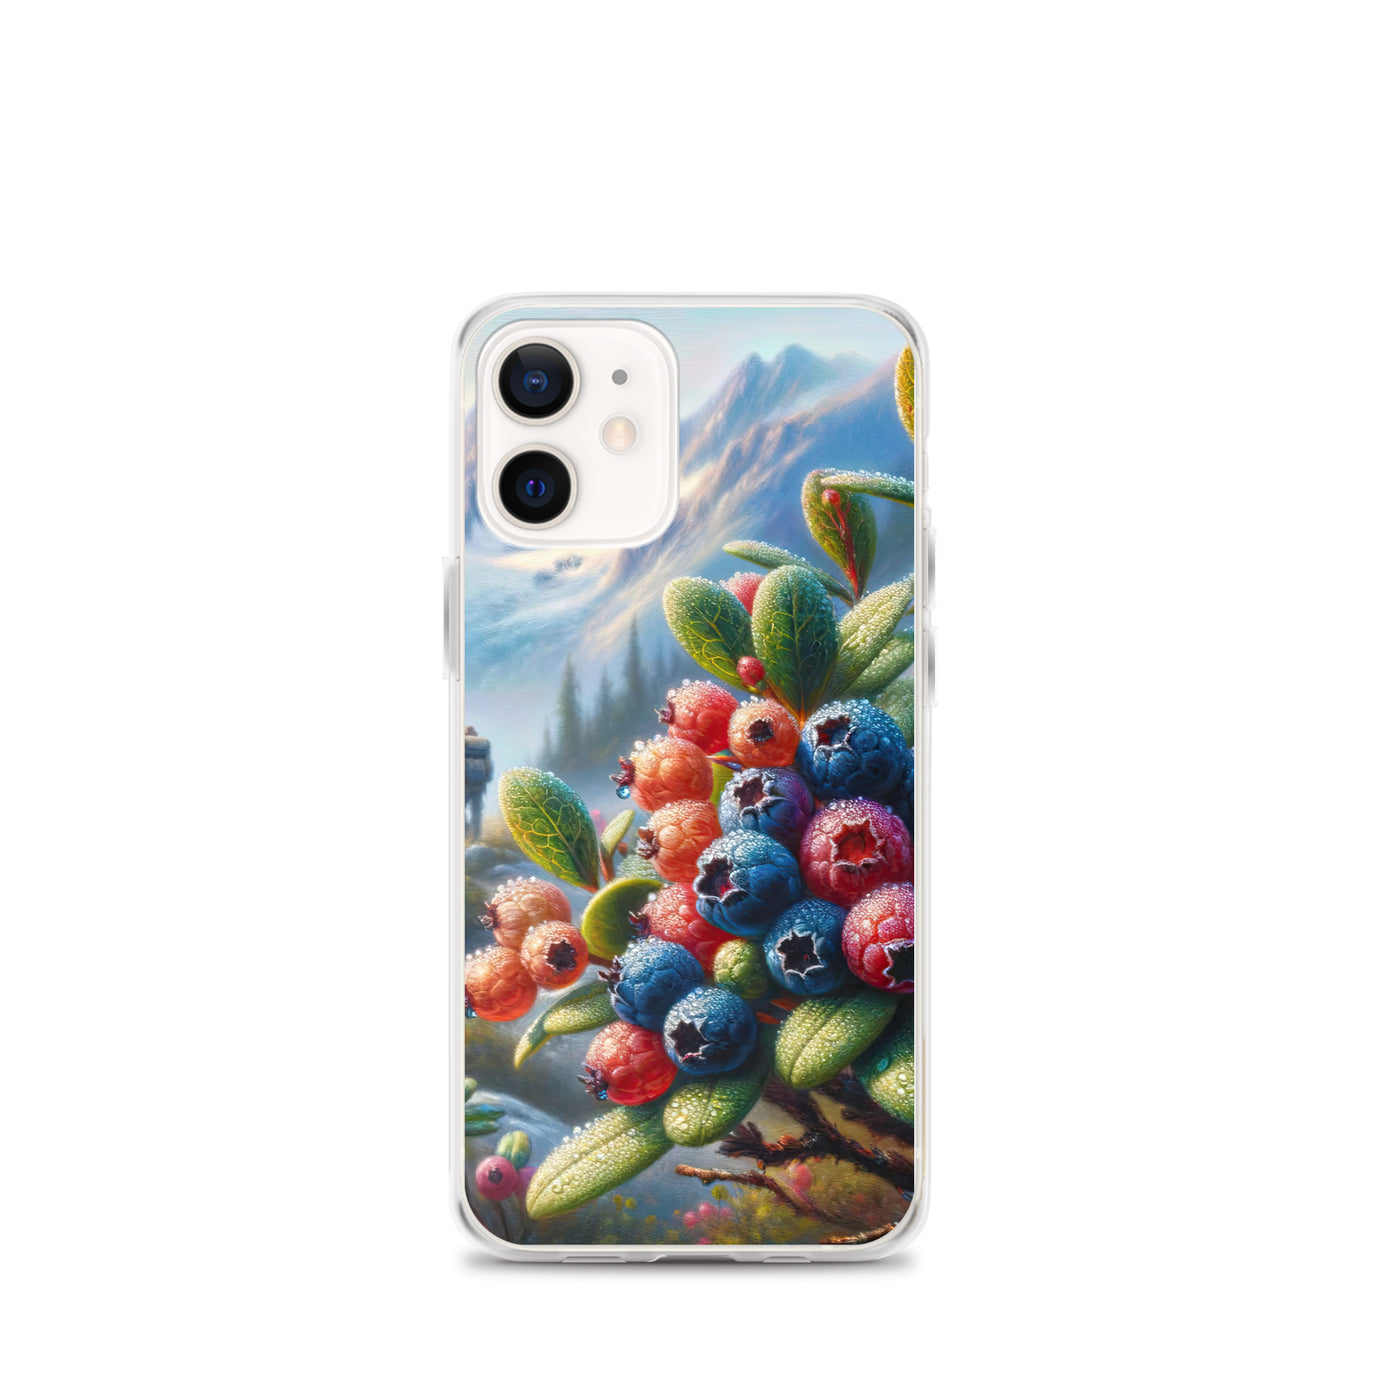 Ölgemälde einer Nahaufnahme von Alpenbeeren in satten Farben und zarten Texturen - iPhone Schutzhülle (durchsichtig) wandern xxx yyy zzz iPhone 12 mini